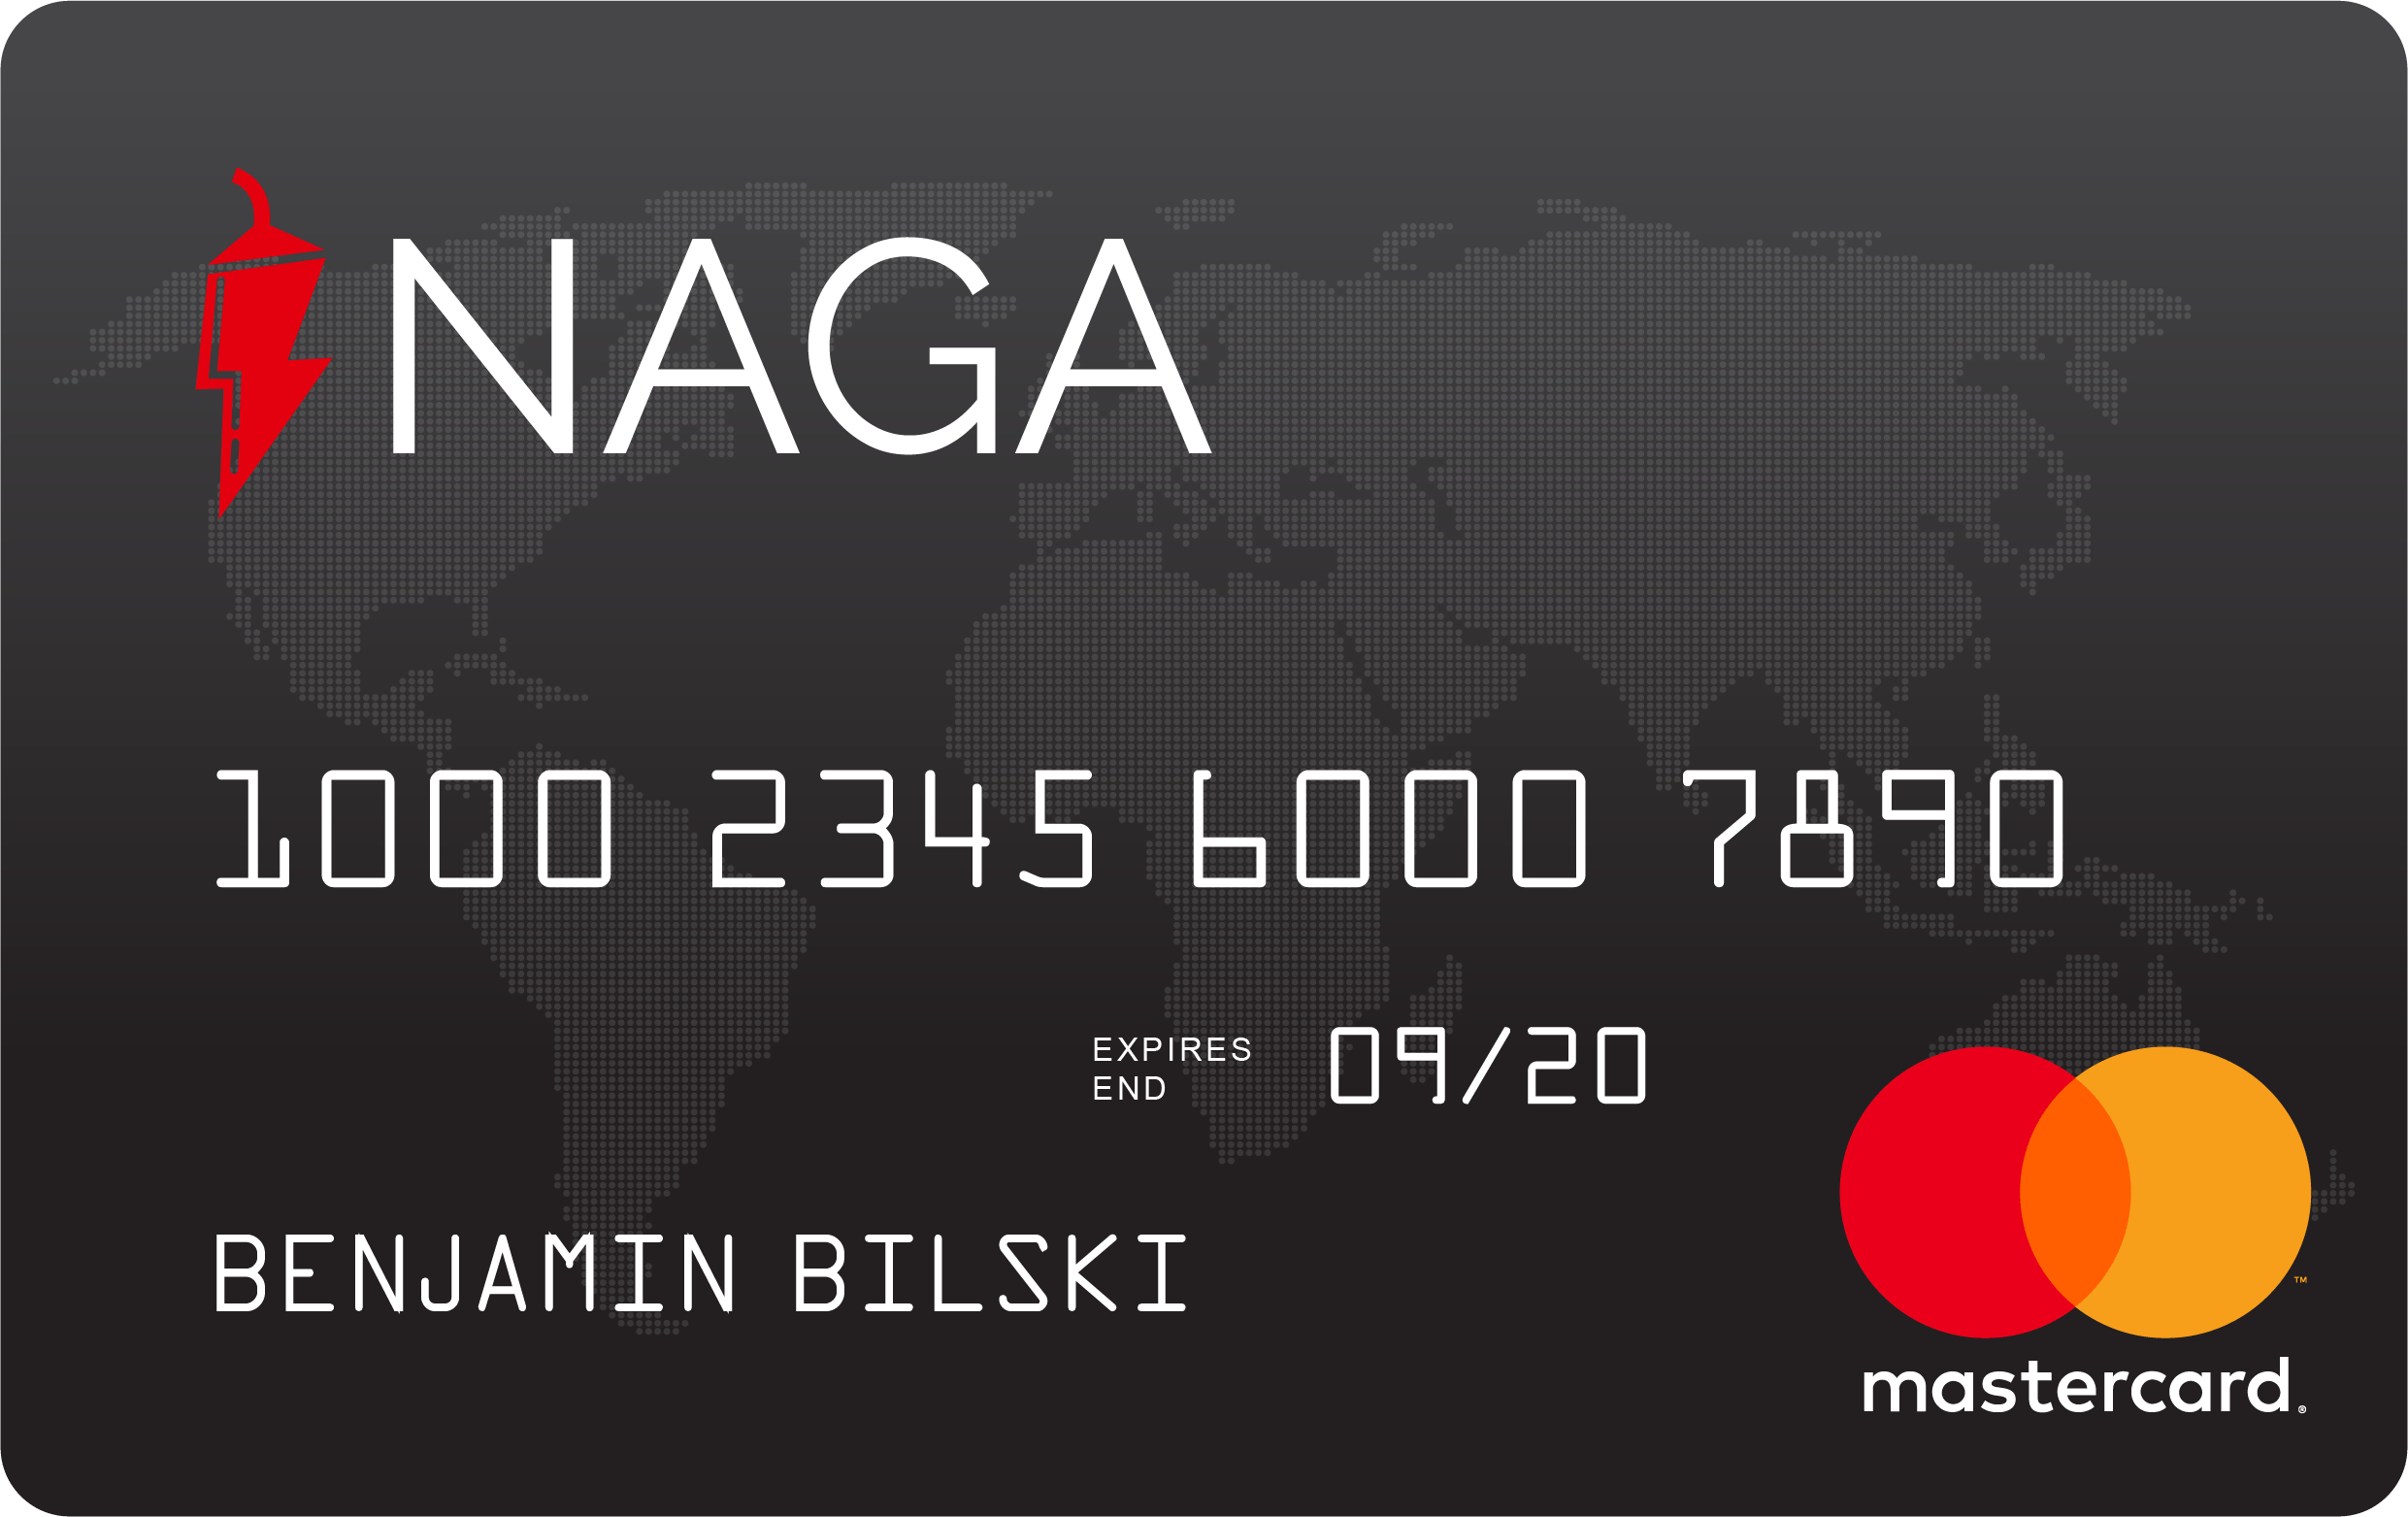 NAGA Master Card